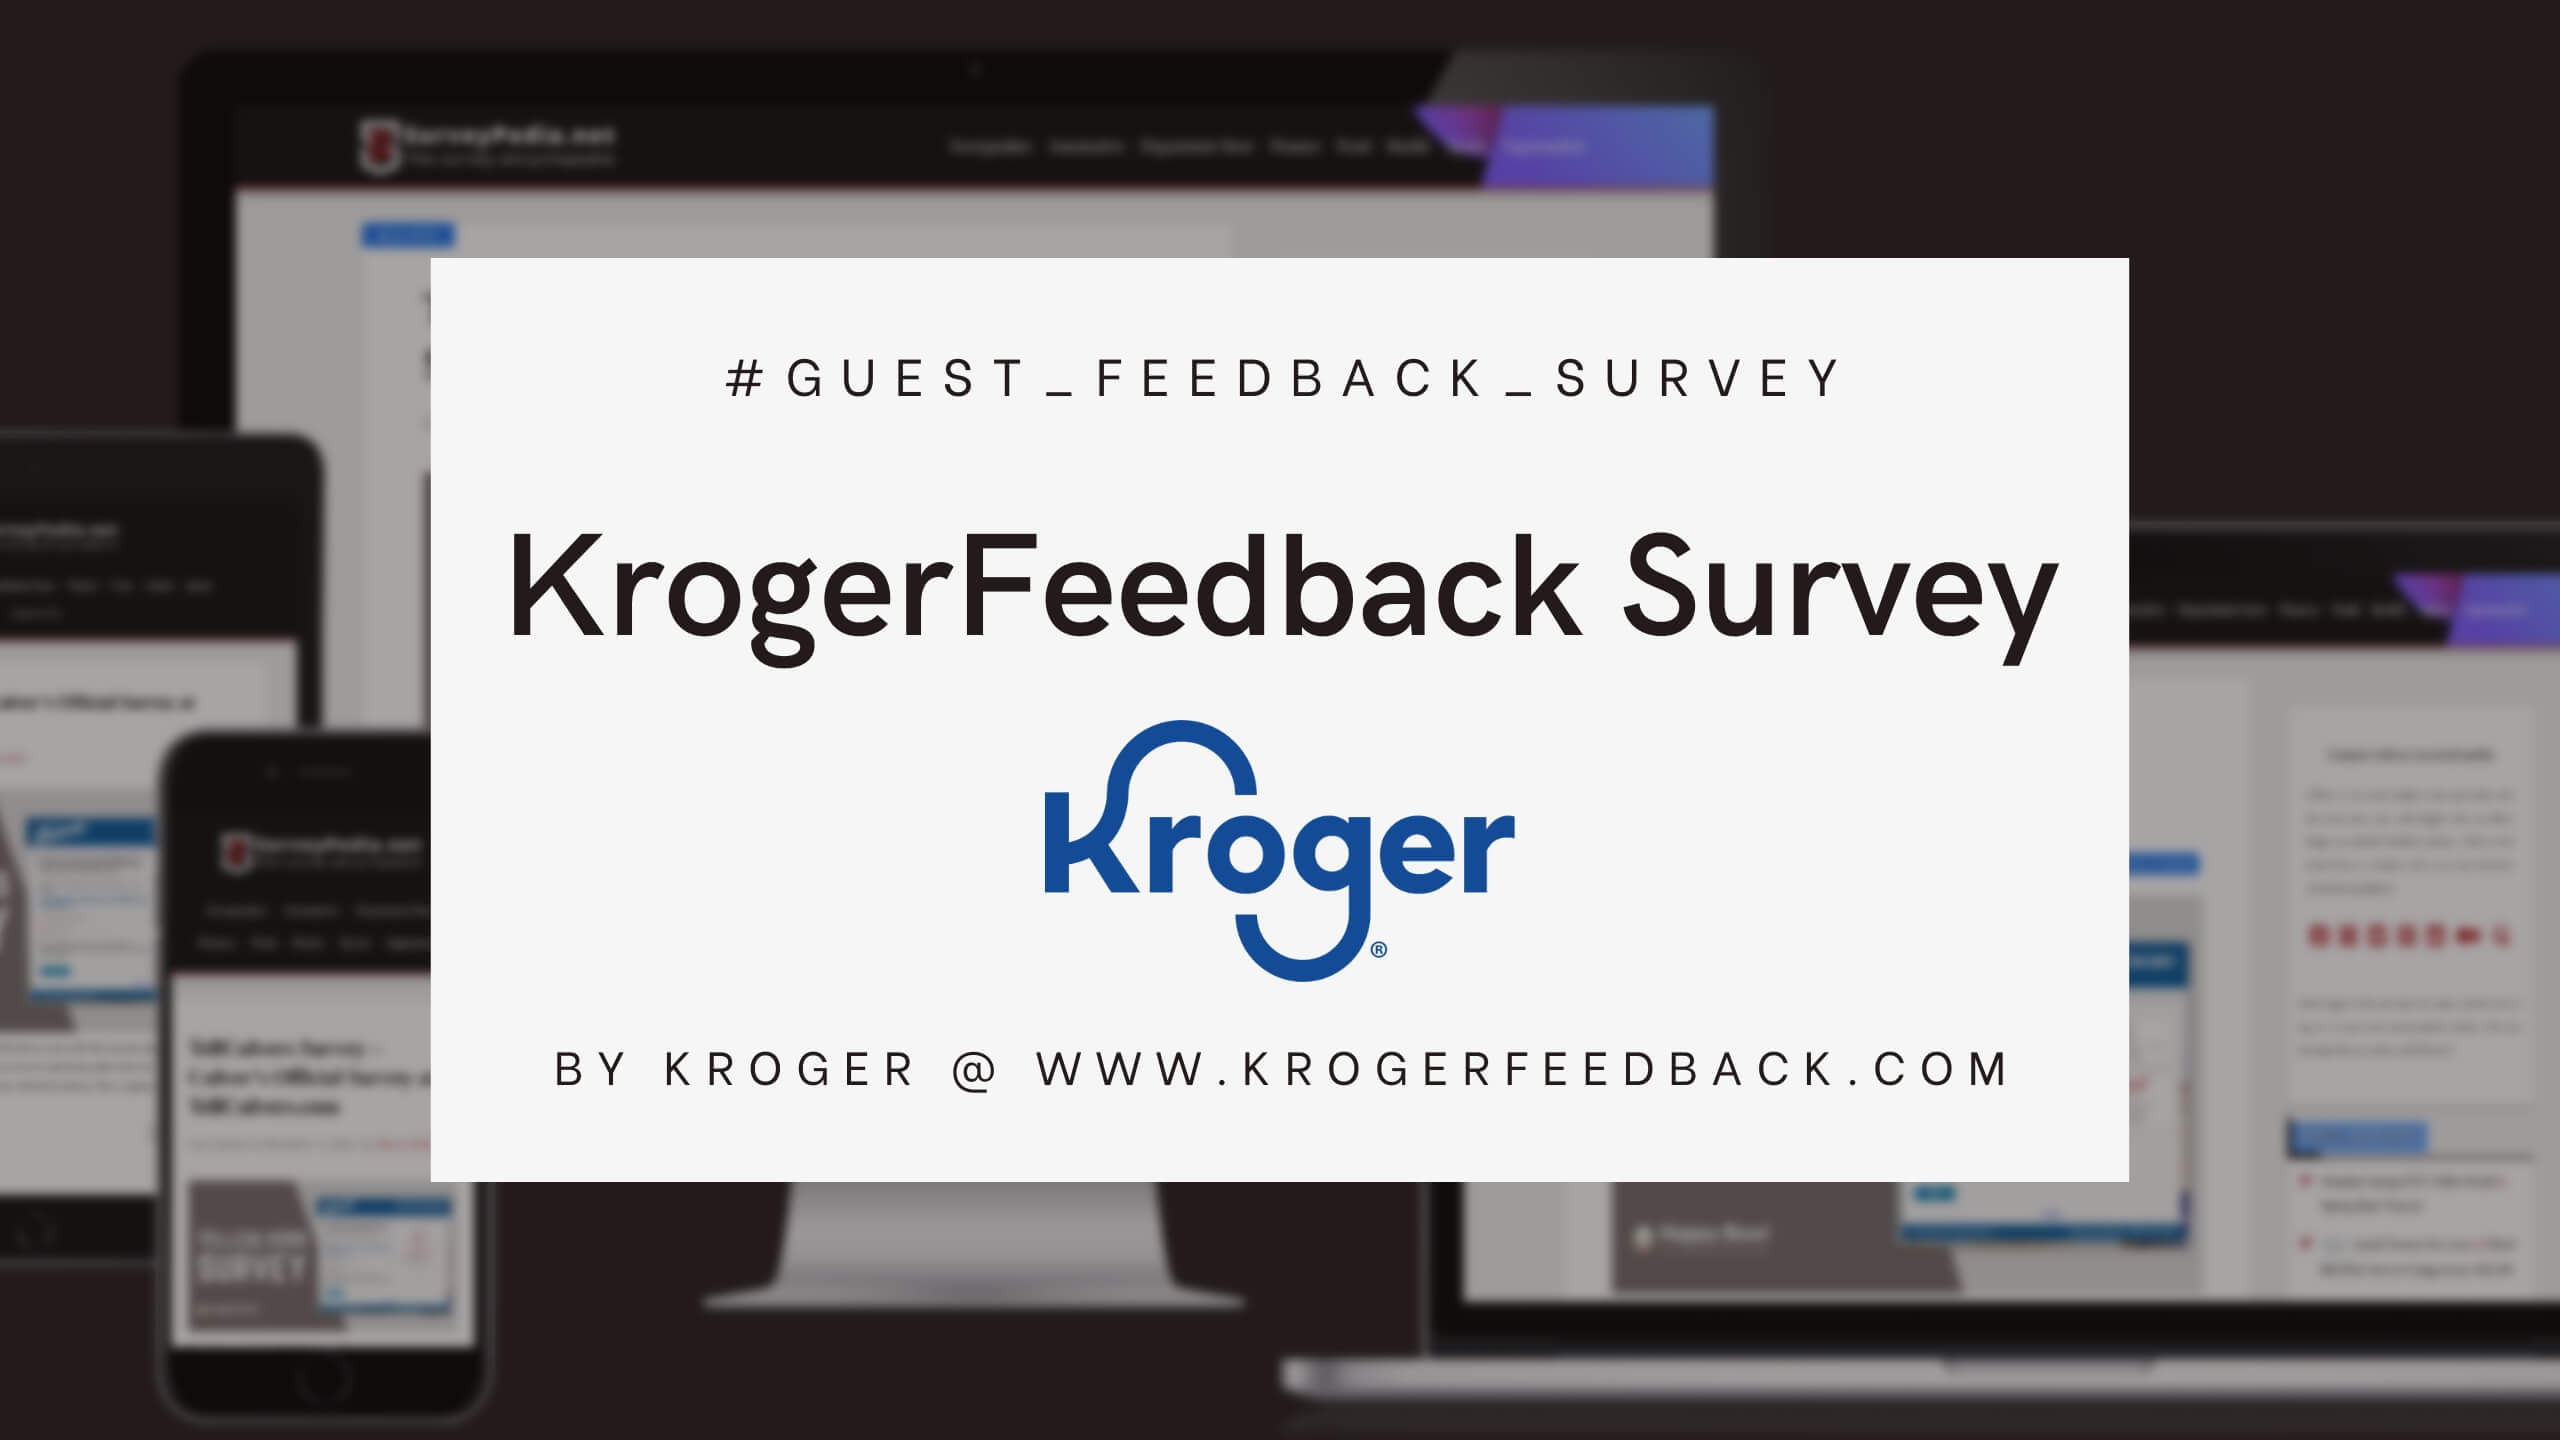 KrogerFeedback Survey - Kroger Official Survey at www.KrogerFeedback.com